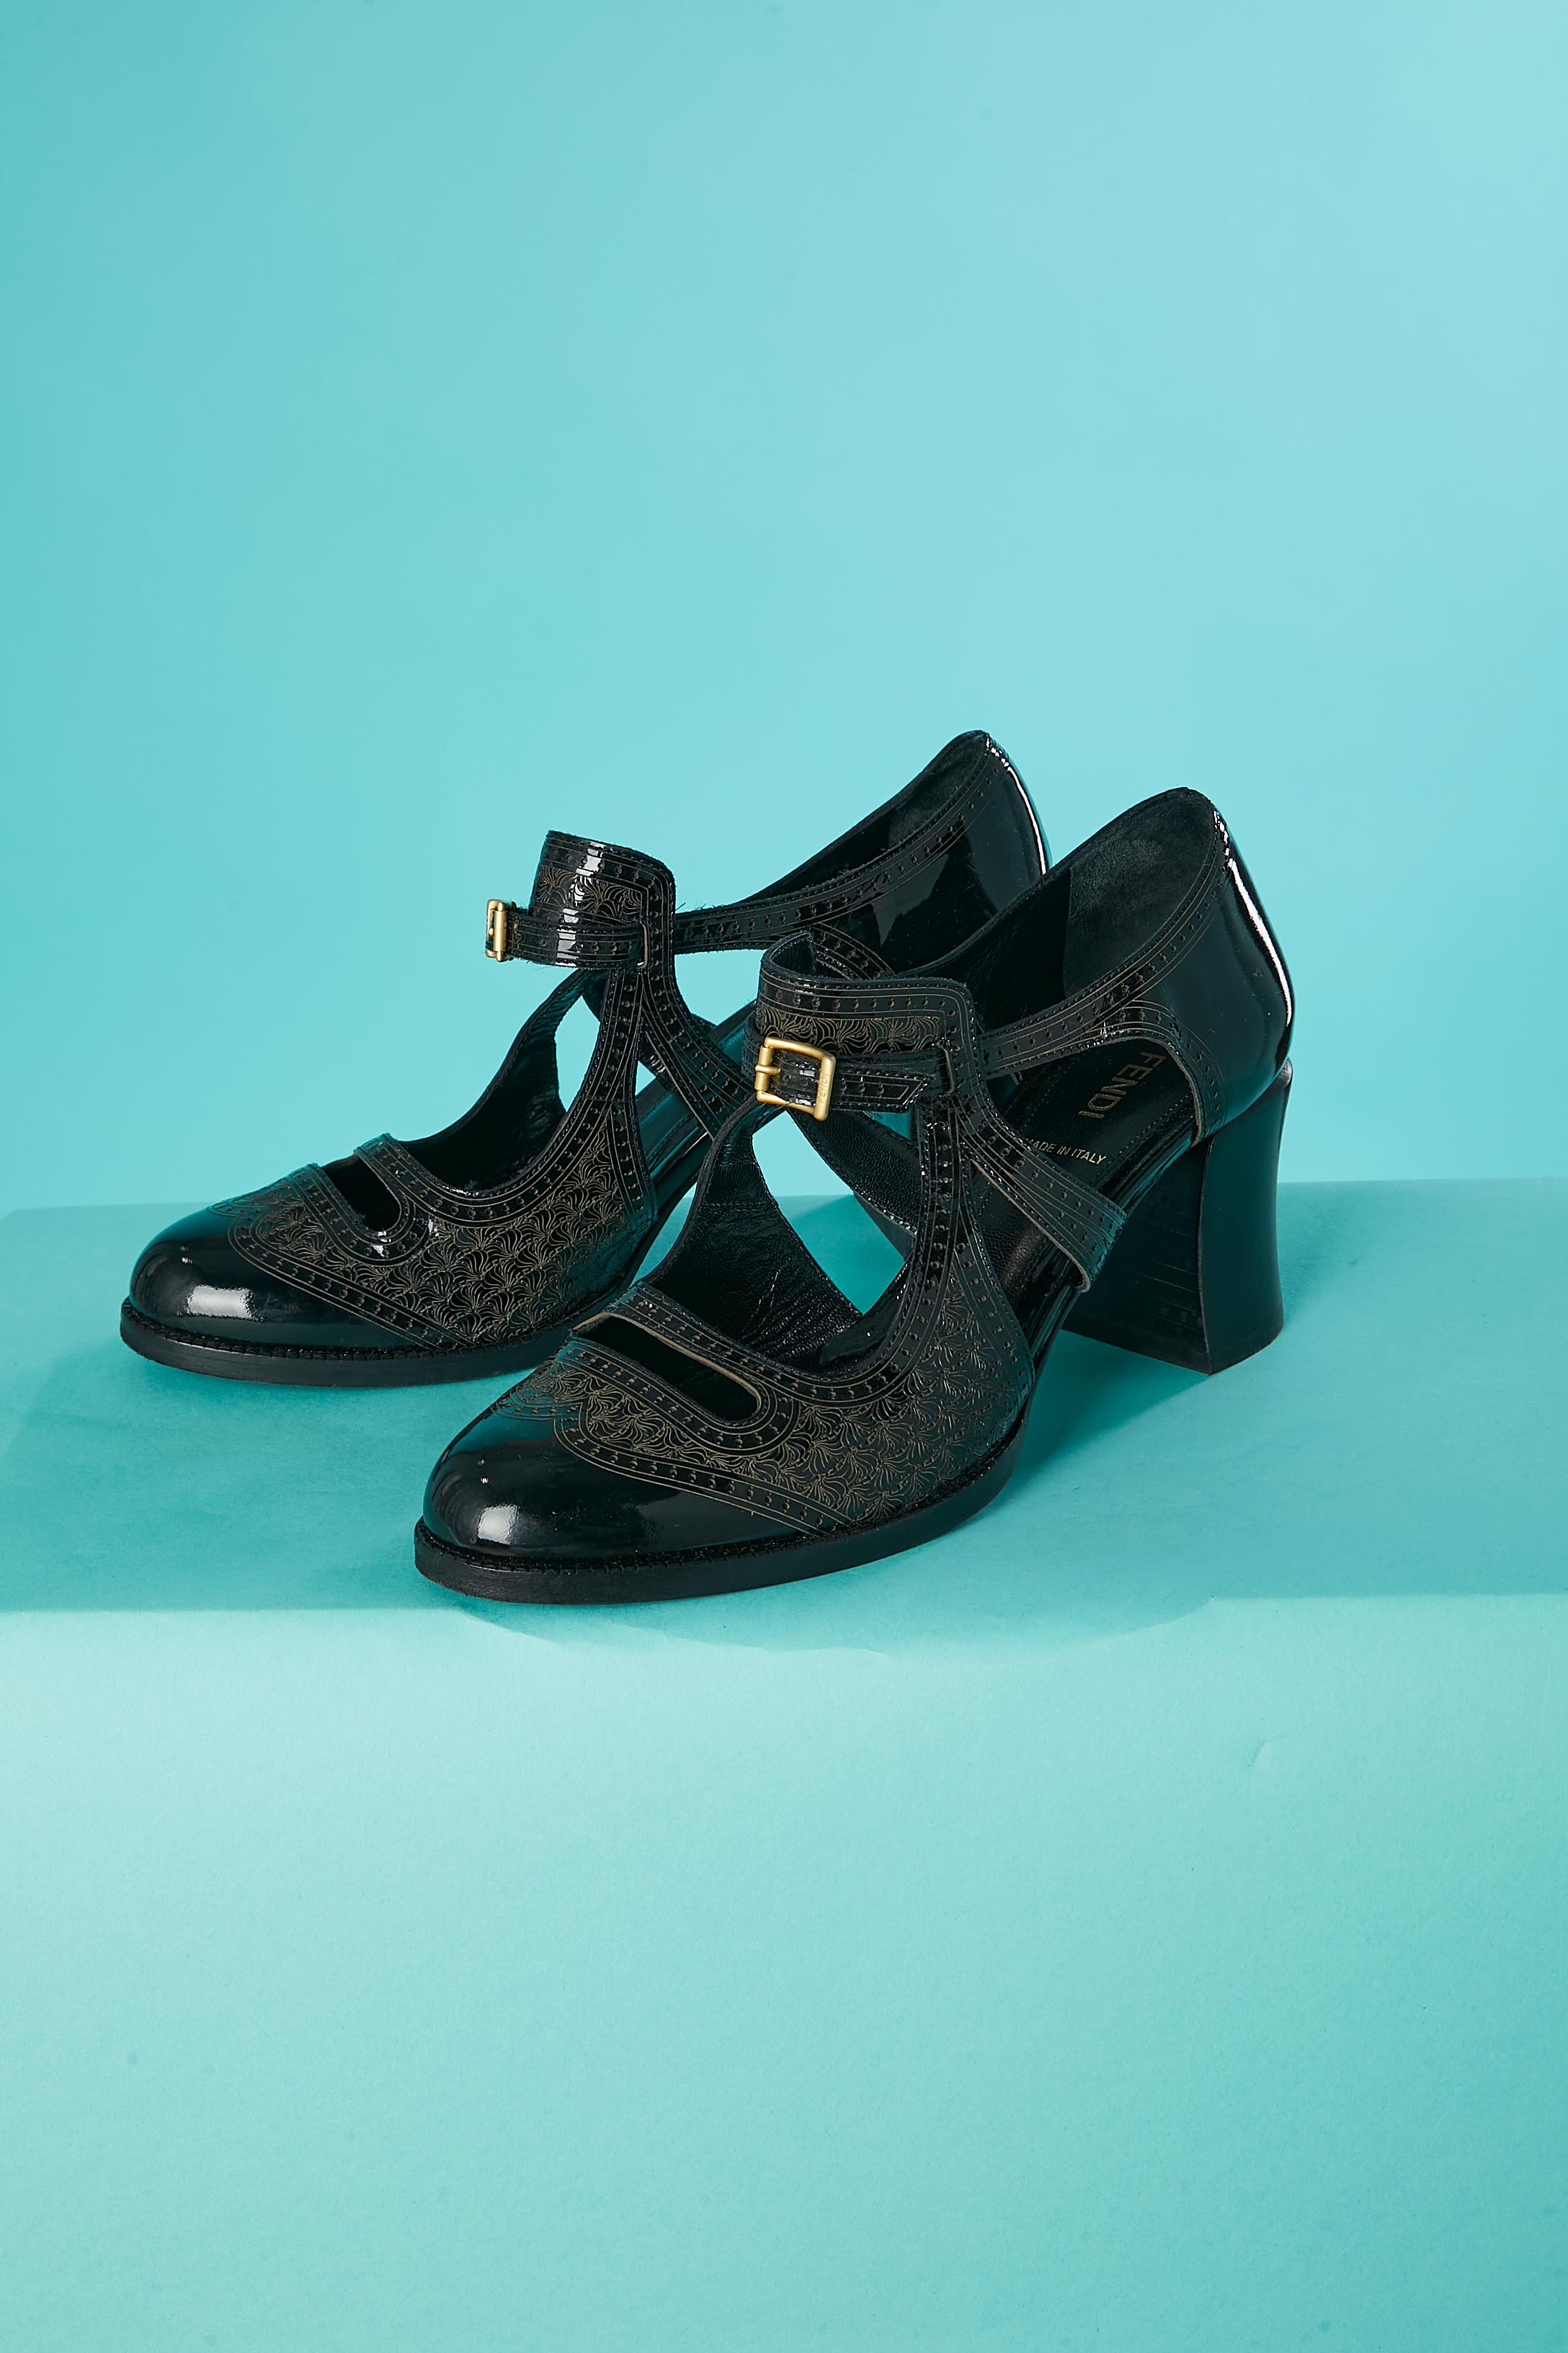 Chaussures en cuir gaufré noir avec découpe et fermeture à boucle. 
Hauteur du talon = 6,5 cm
POINTURE : 38 1/2 